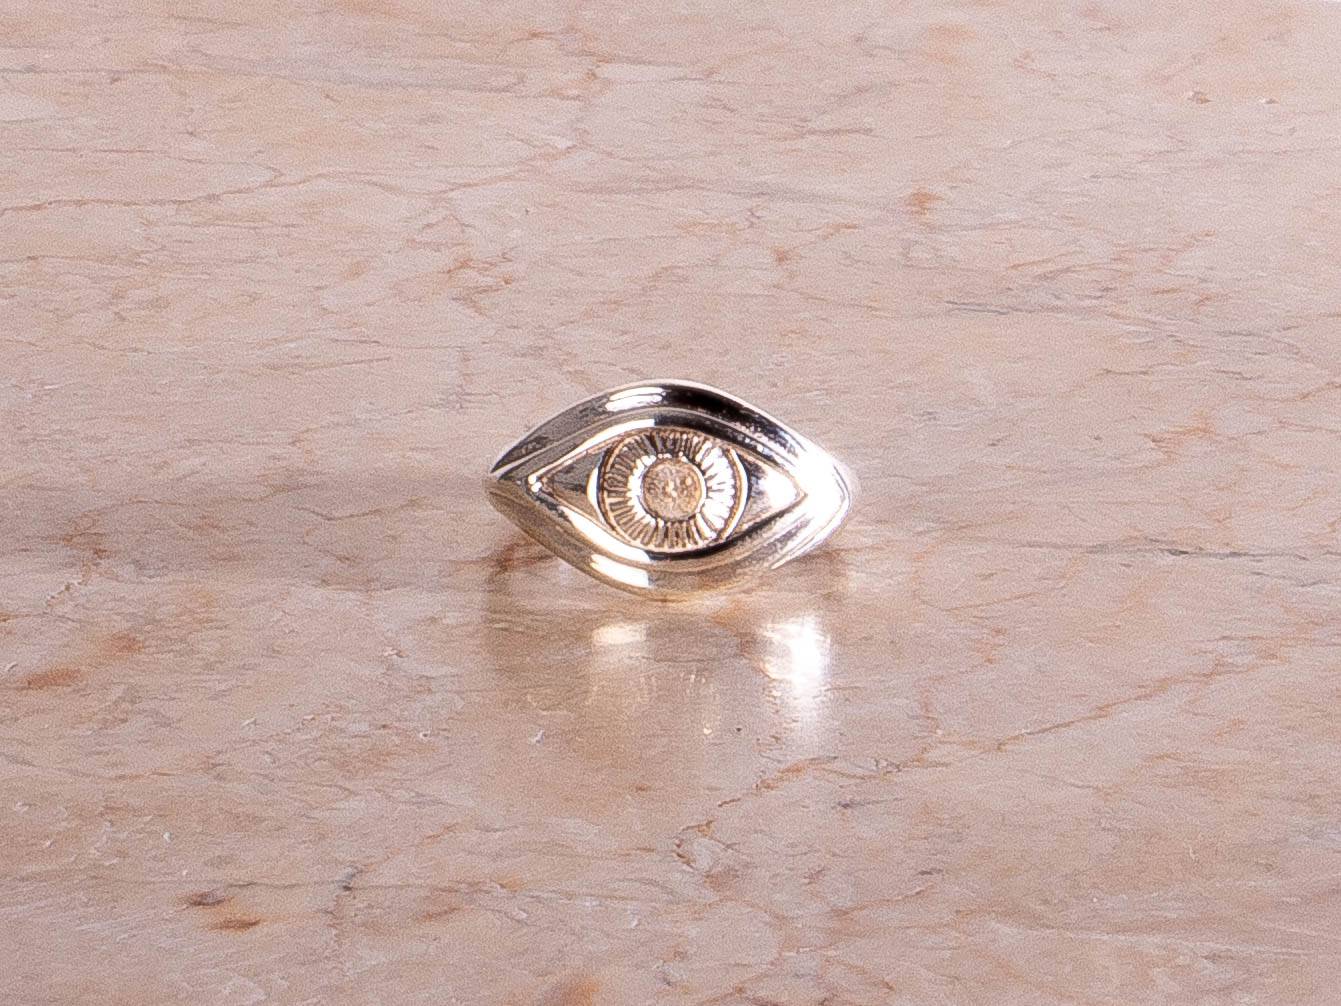 Talisman Böser Blick Schutz Augen Ring aus 925 Sterling Silber - NooeBerlin